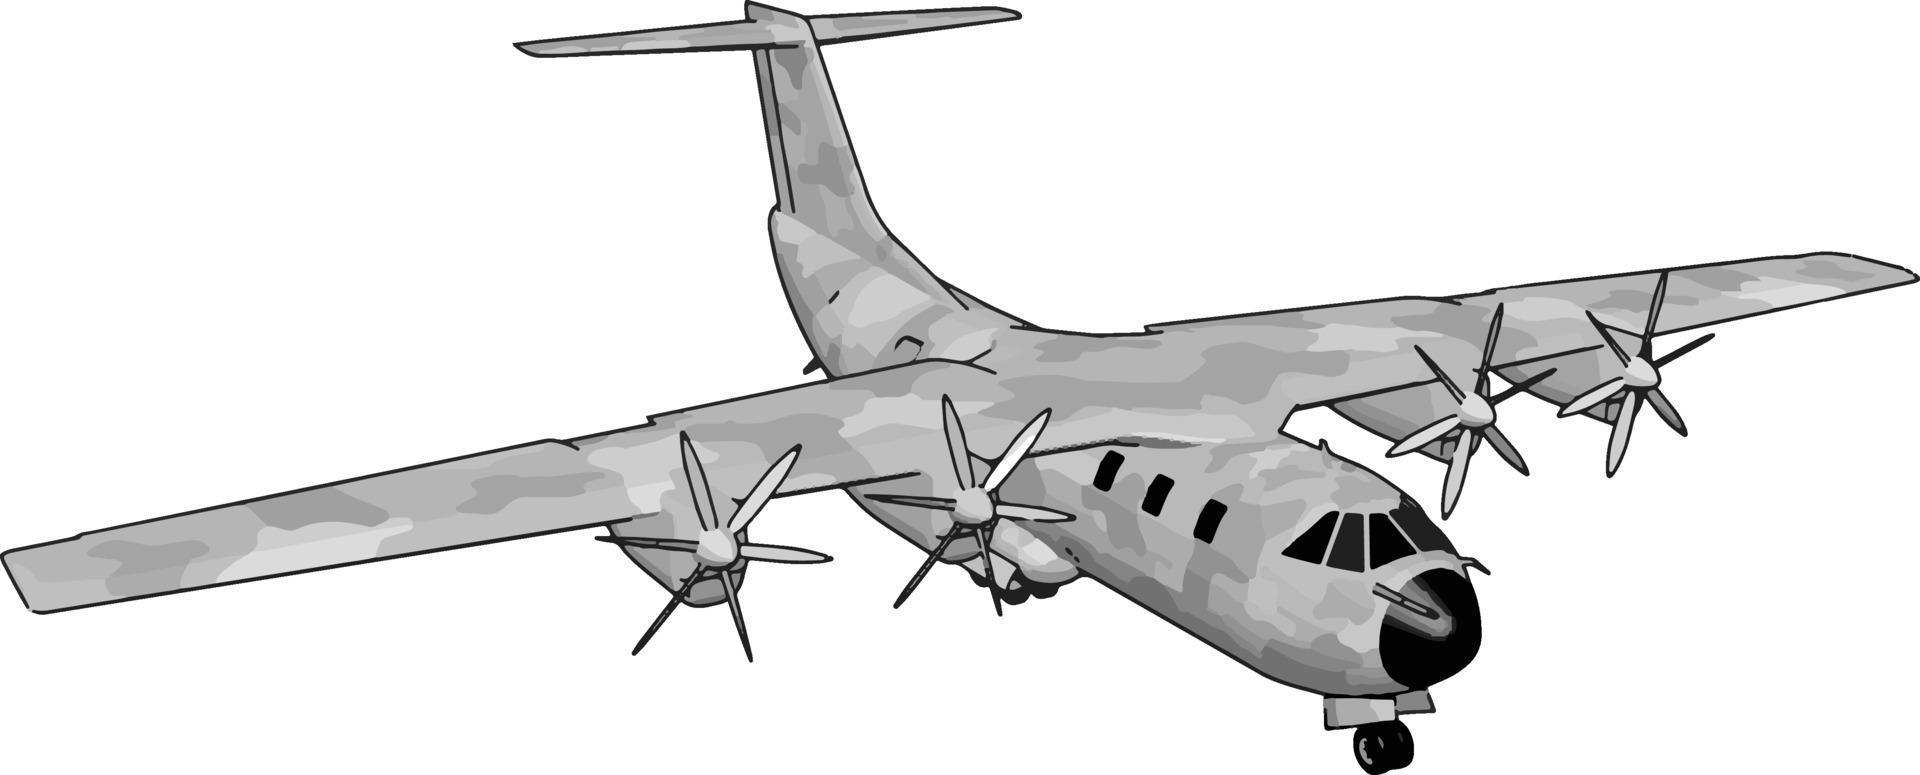 Gran bombardero antiguo, ilustración, vector sobre fondo blanco.